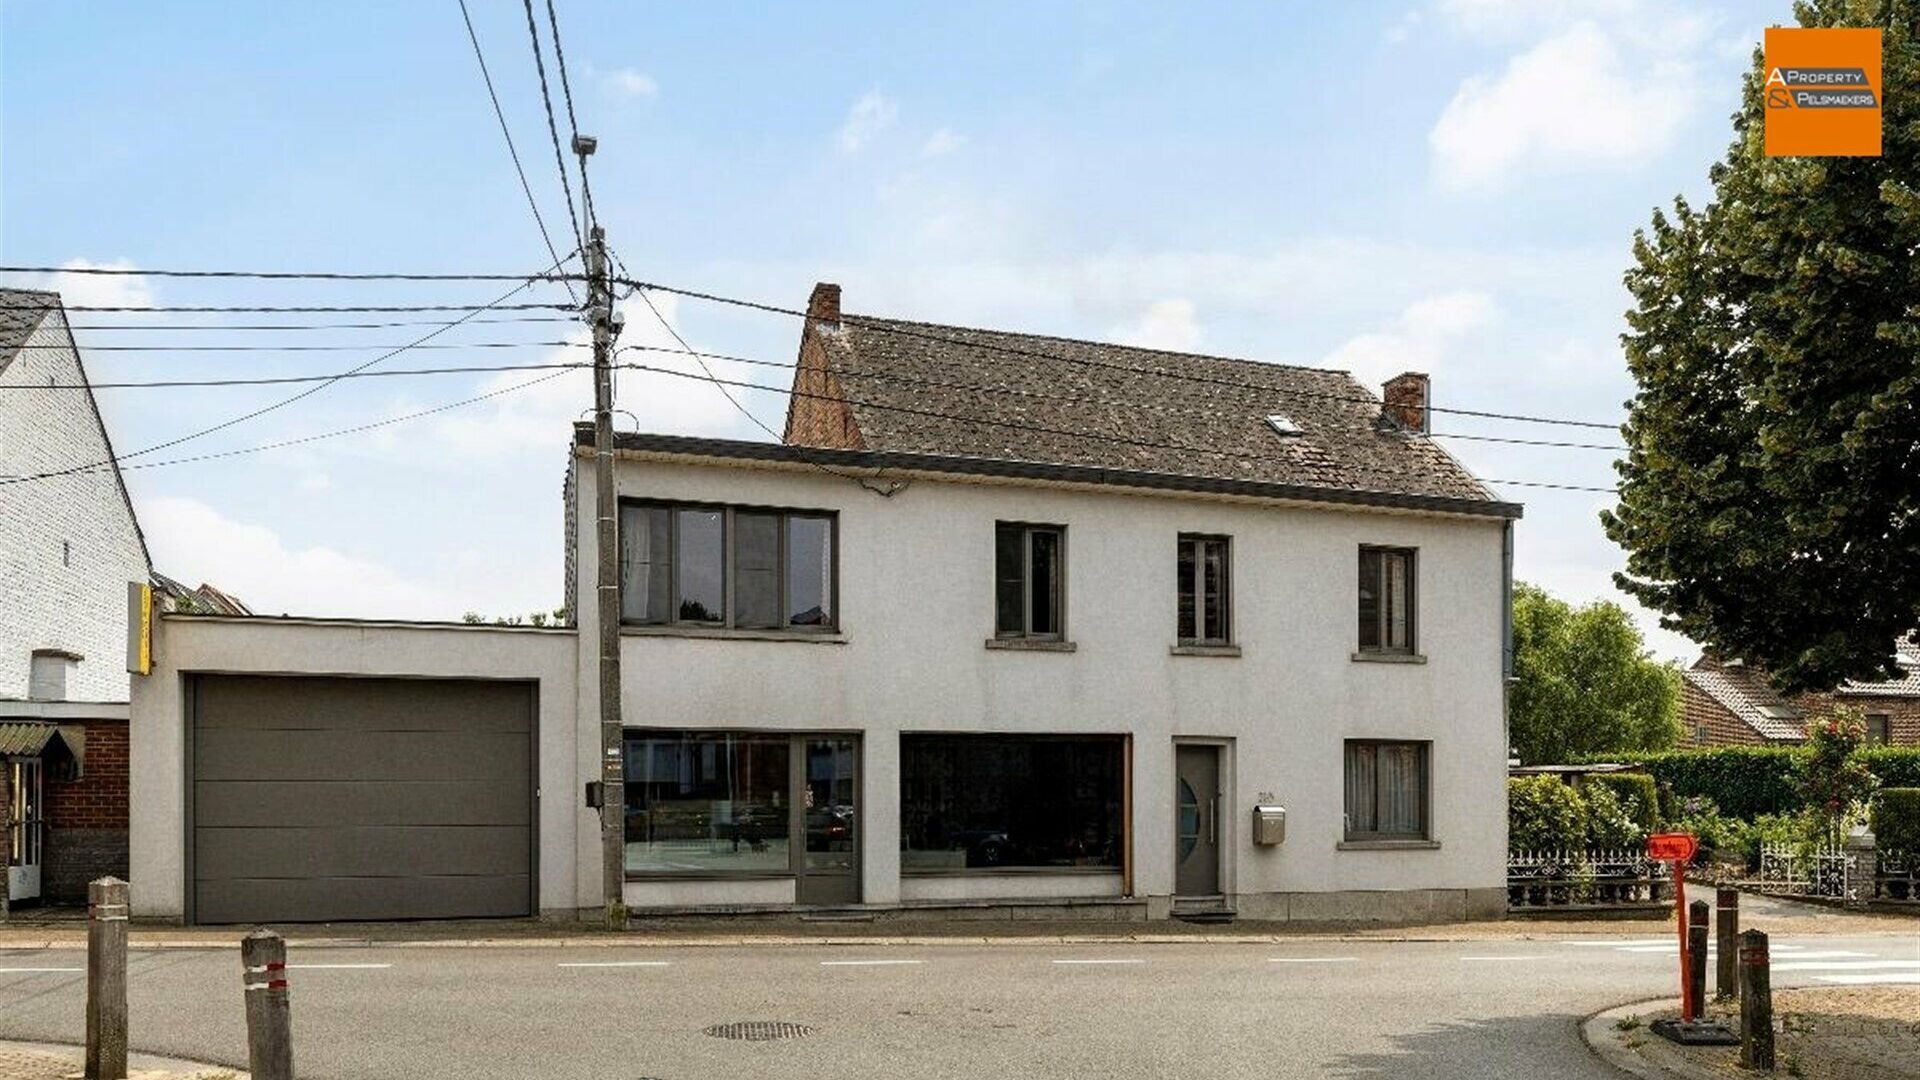 House for sale in MEERBEEK